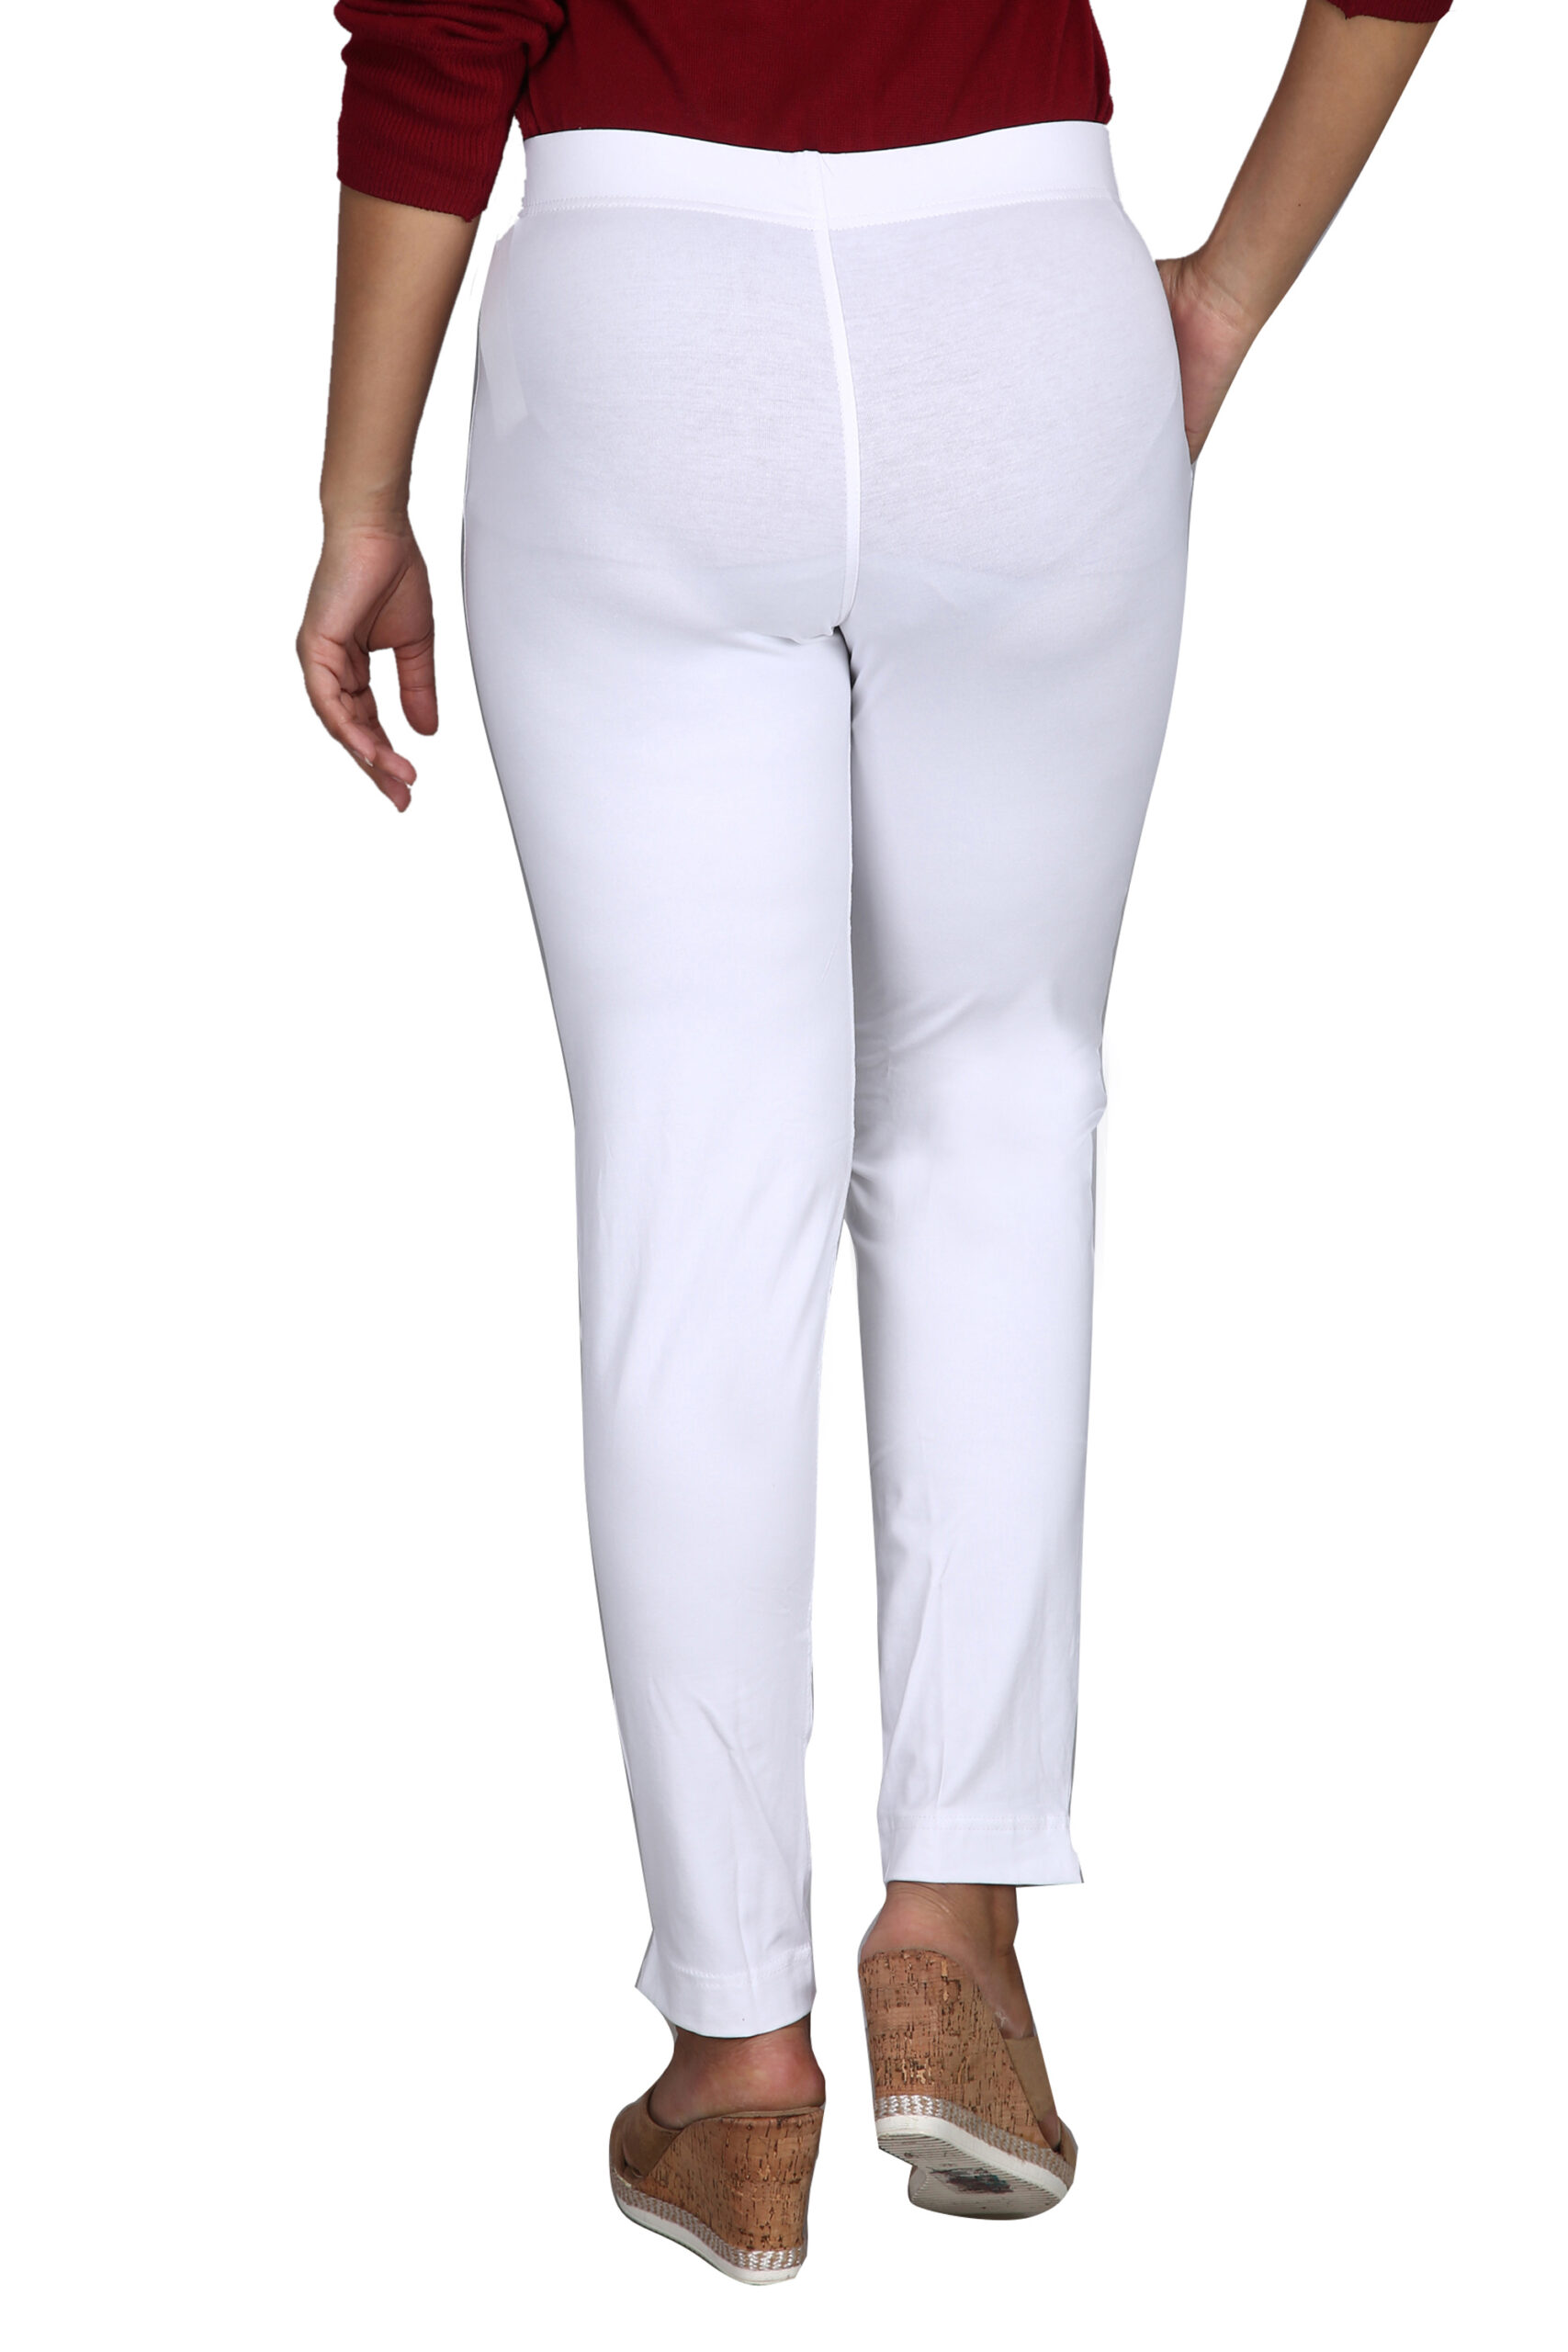 Fashion Pant Free Size Color Off-White - Bovzen®